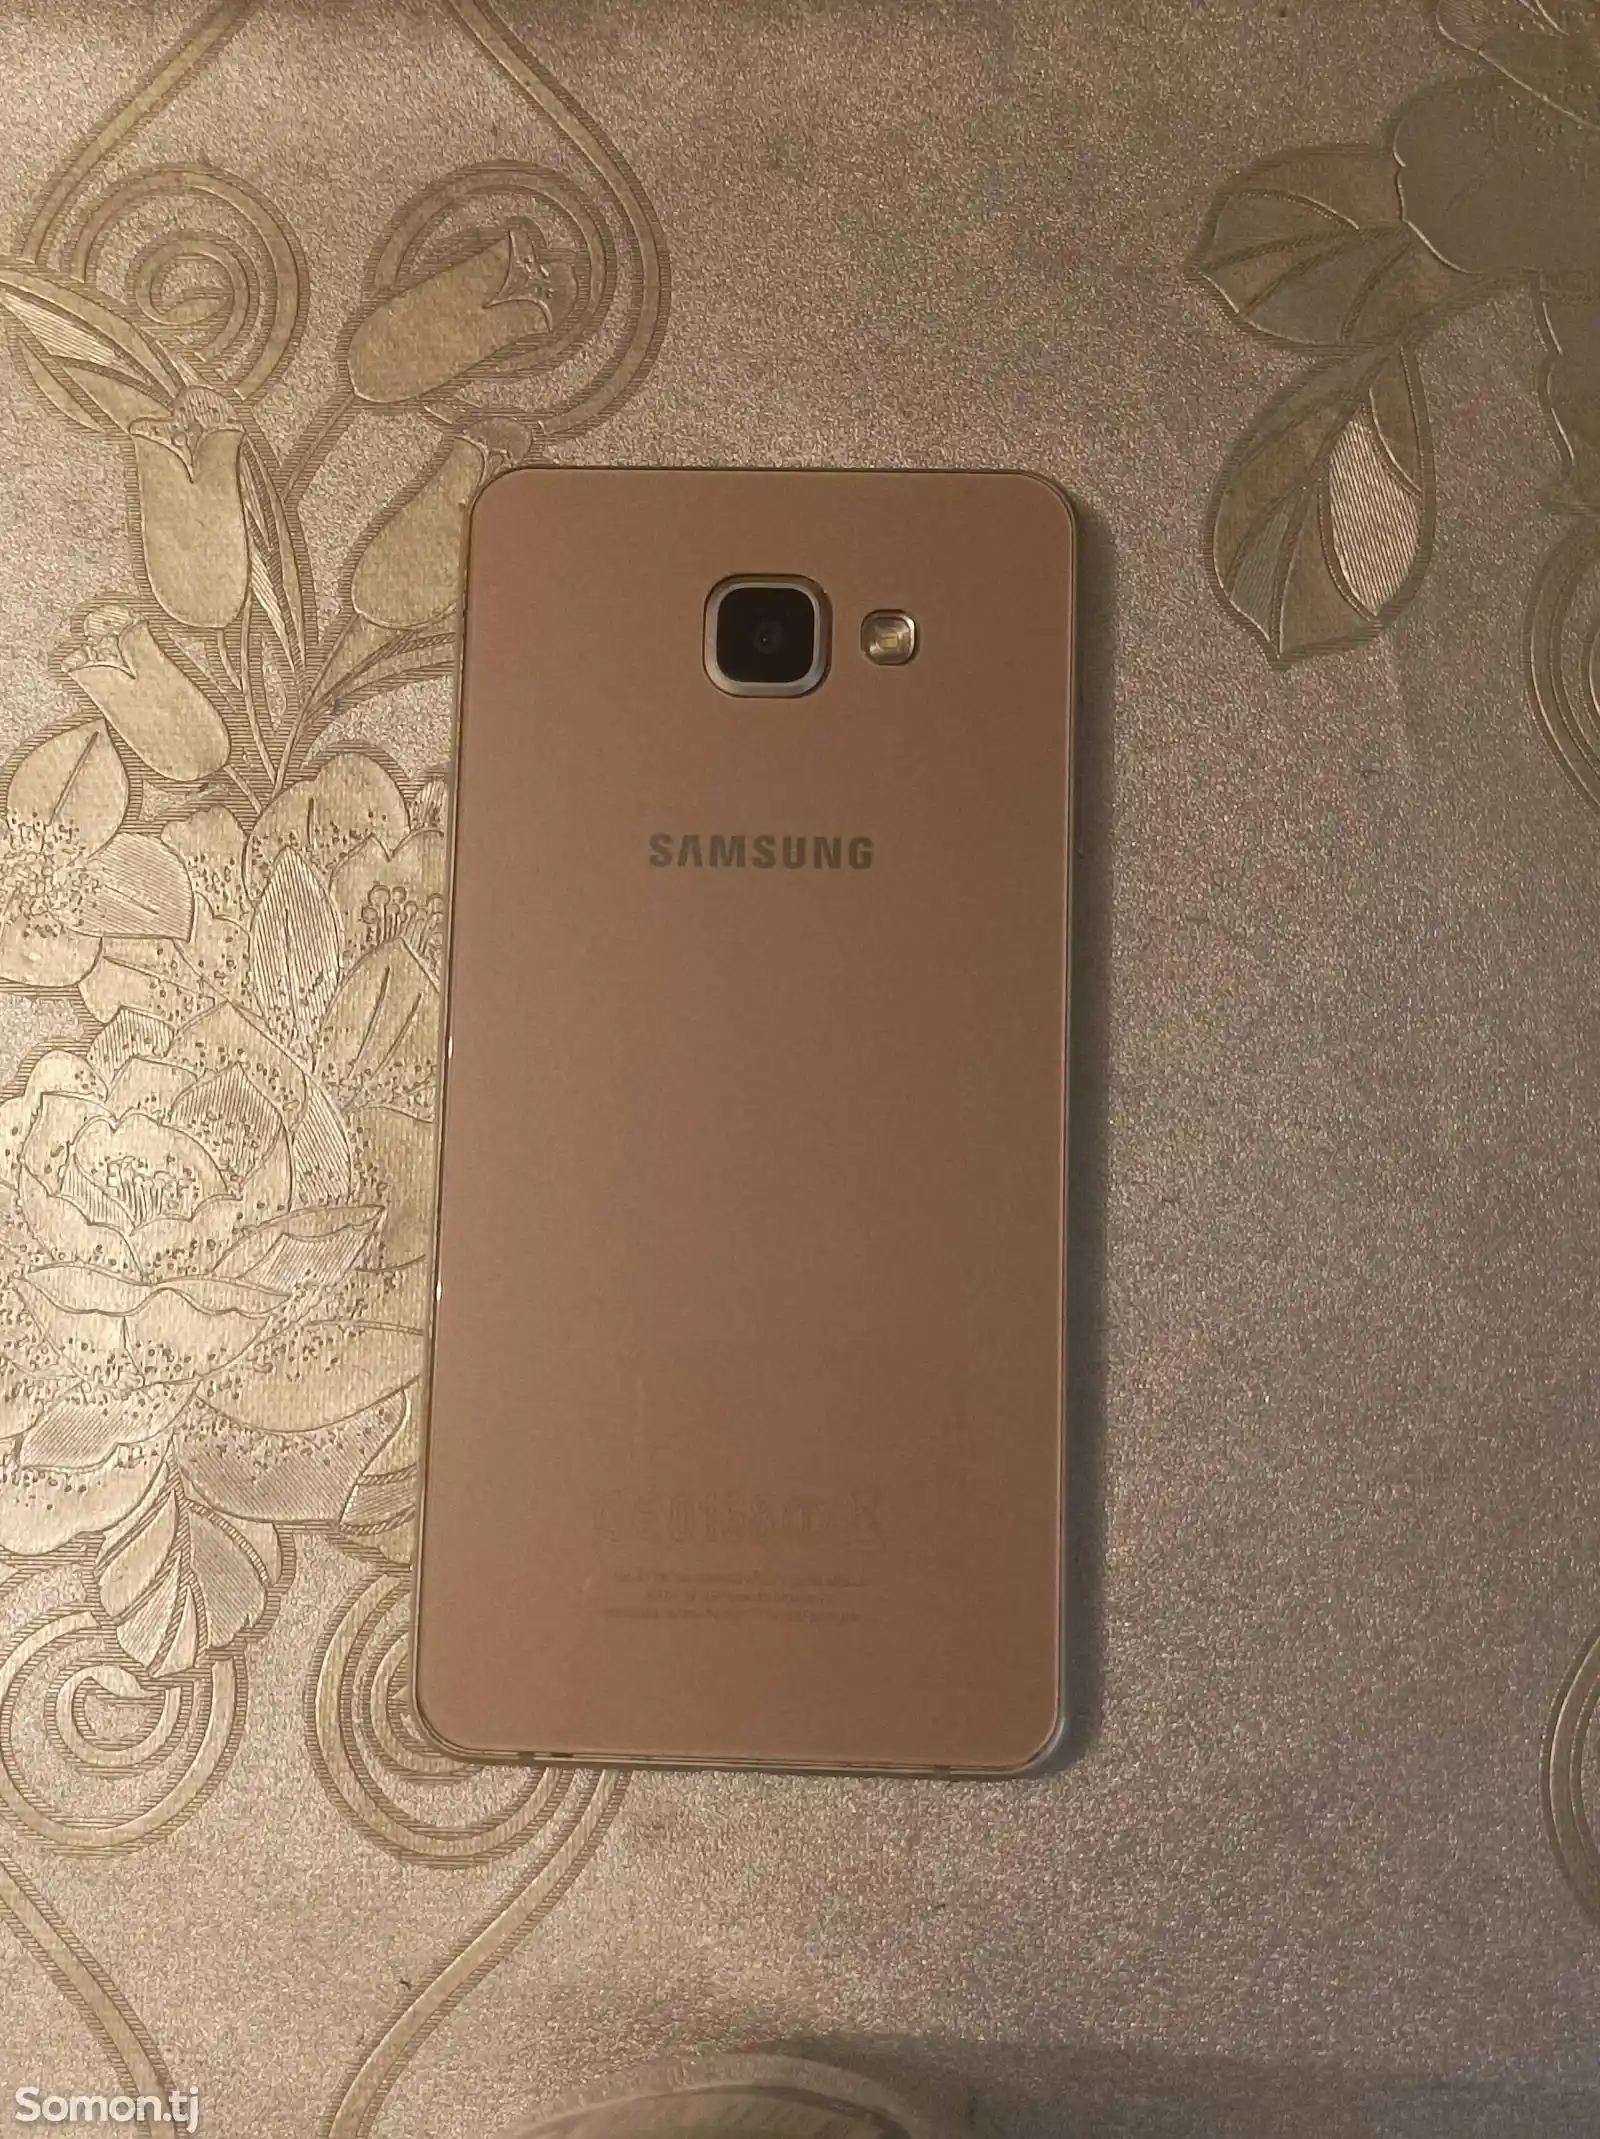 Samsung Galaxy J7-2